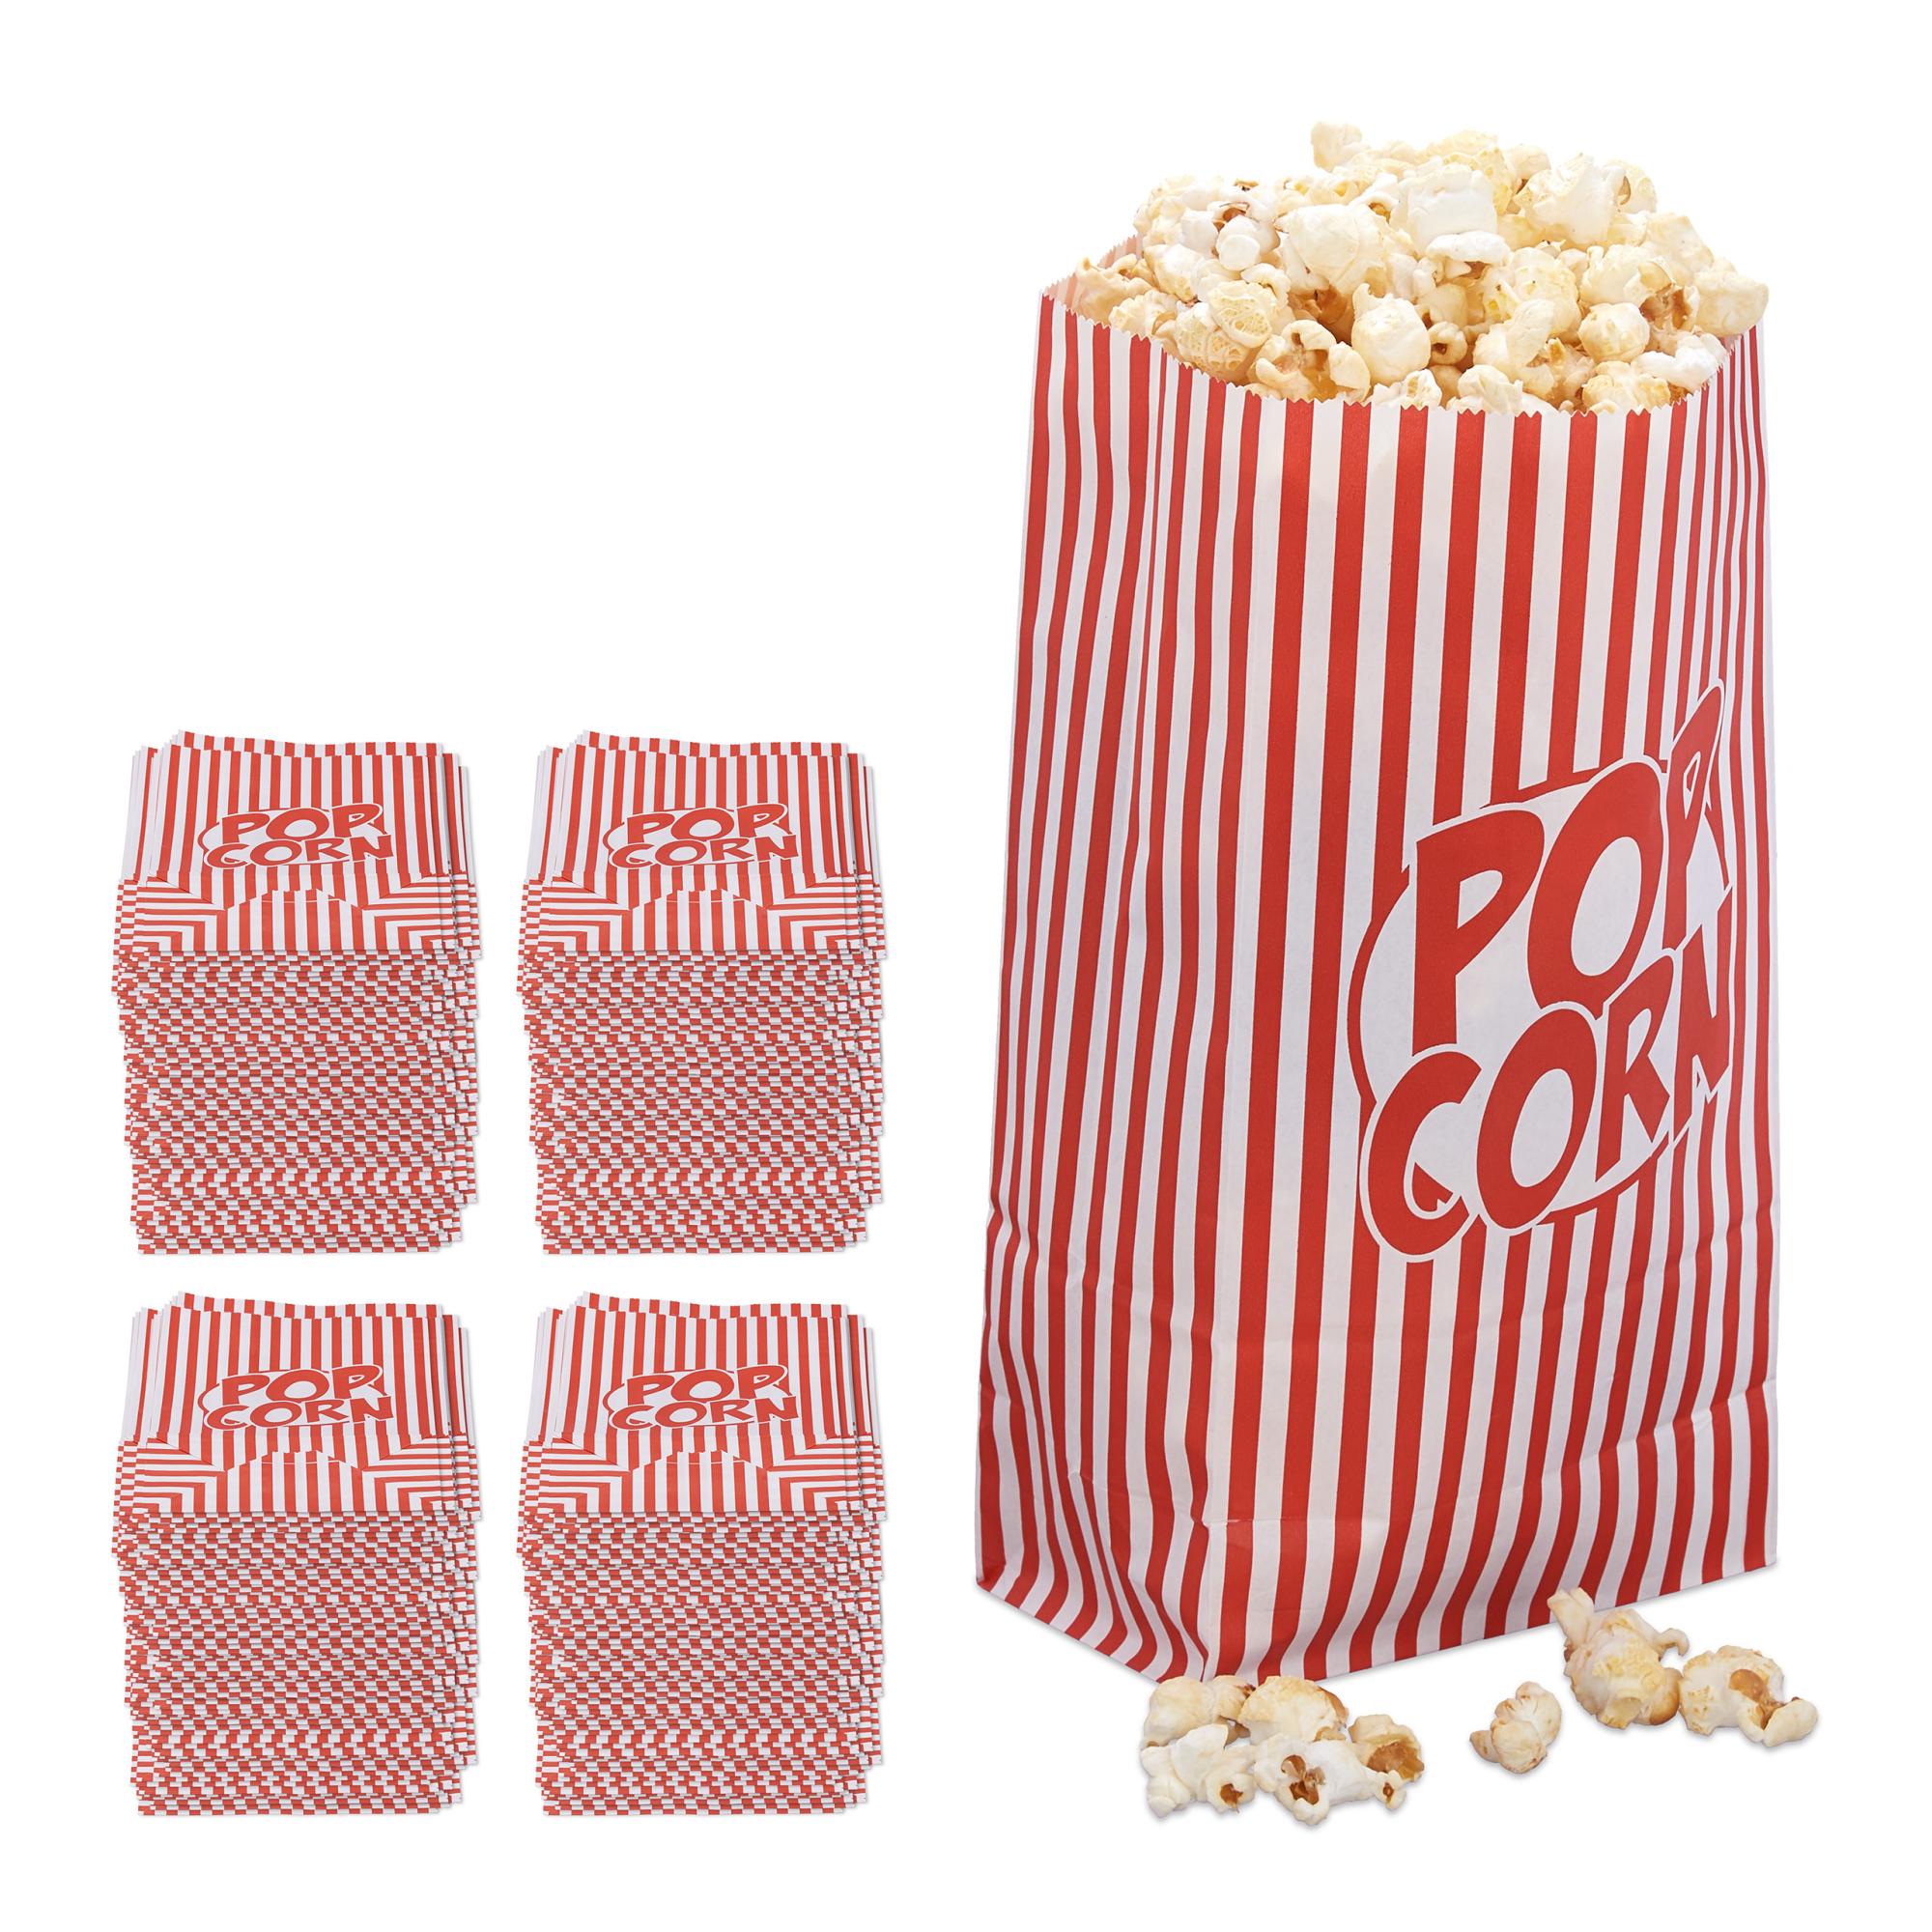 576x Sacchetti Pop Corn, Set da 288 Buste per Popcorn in Carta, Contenitore  Box Porta Caramelle, Rosso-Bianco